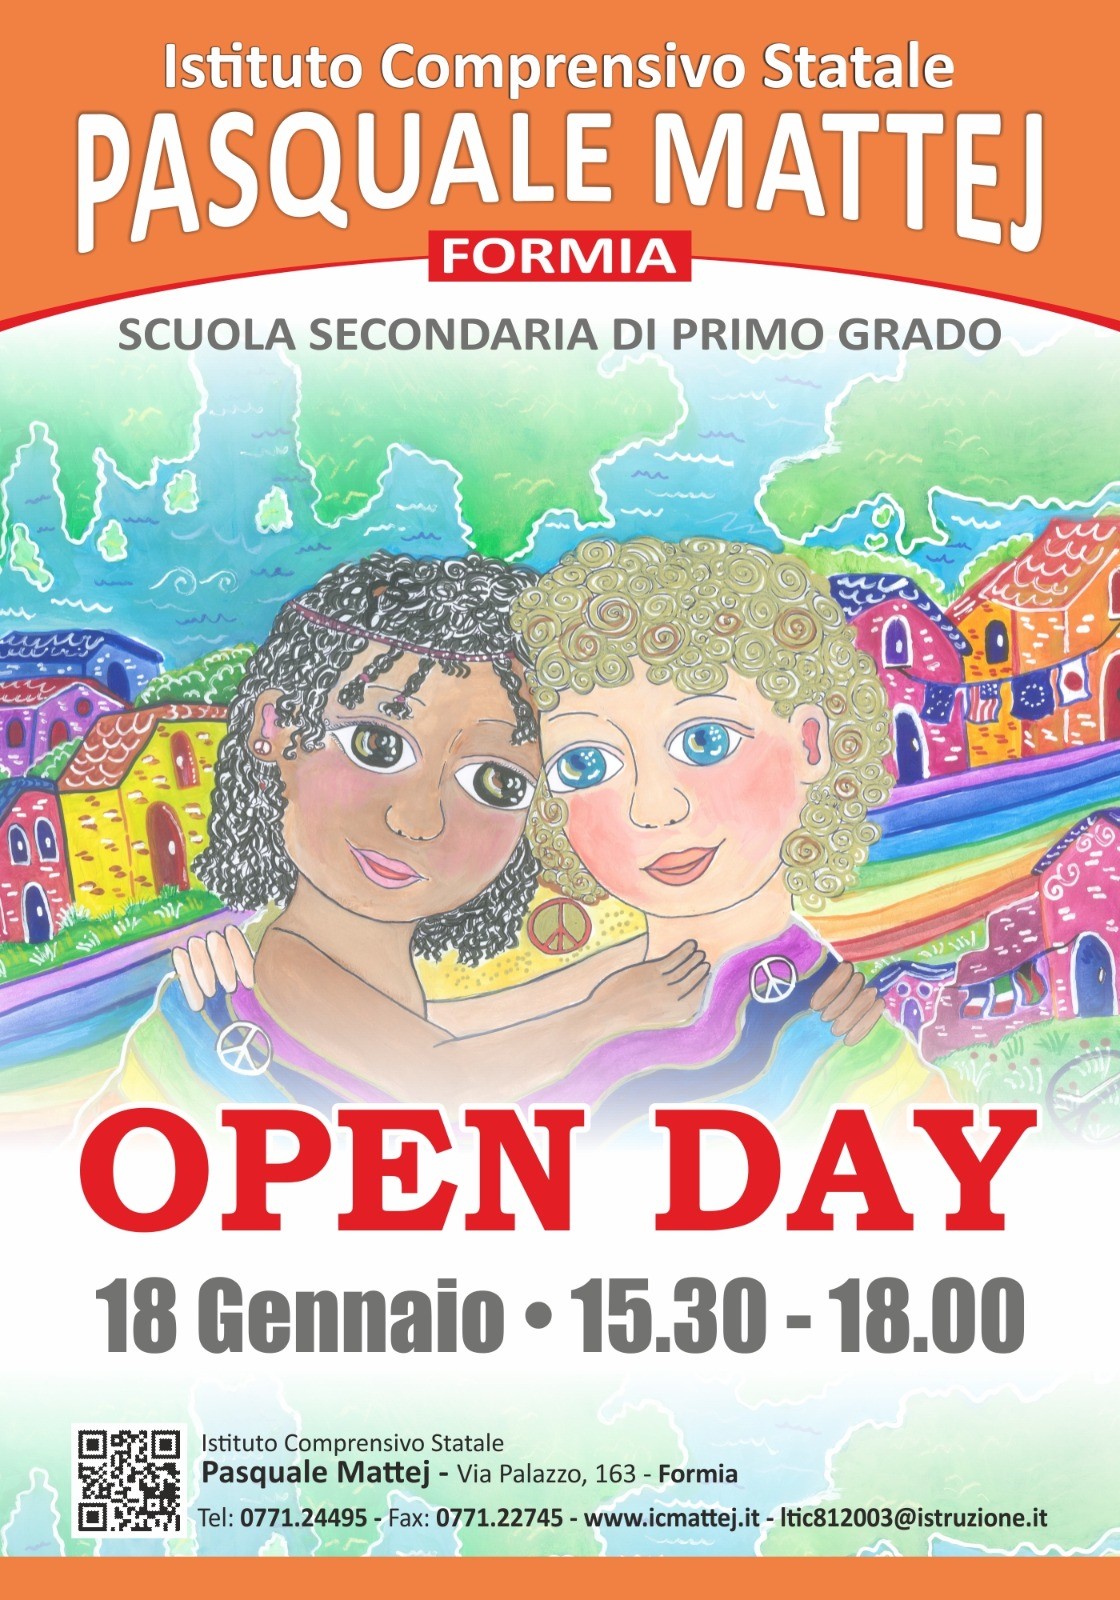 OPEN DAY SCUOLA SECONDARIA DI PRIMO GRADO